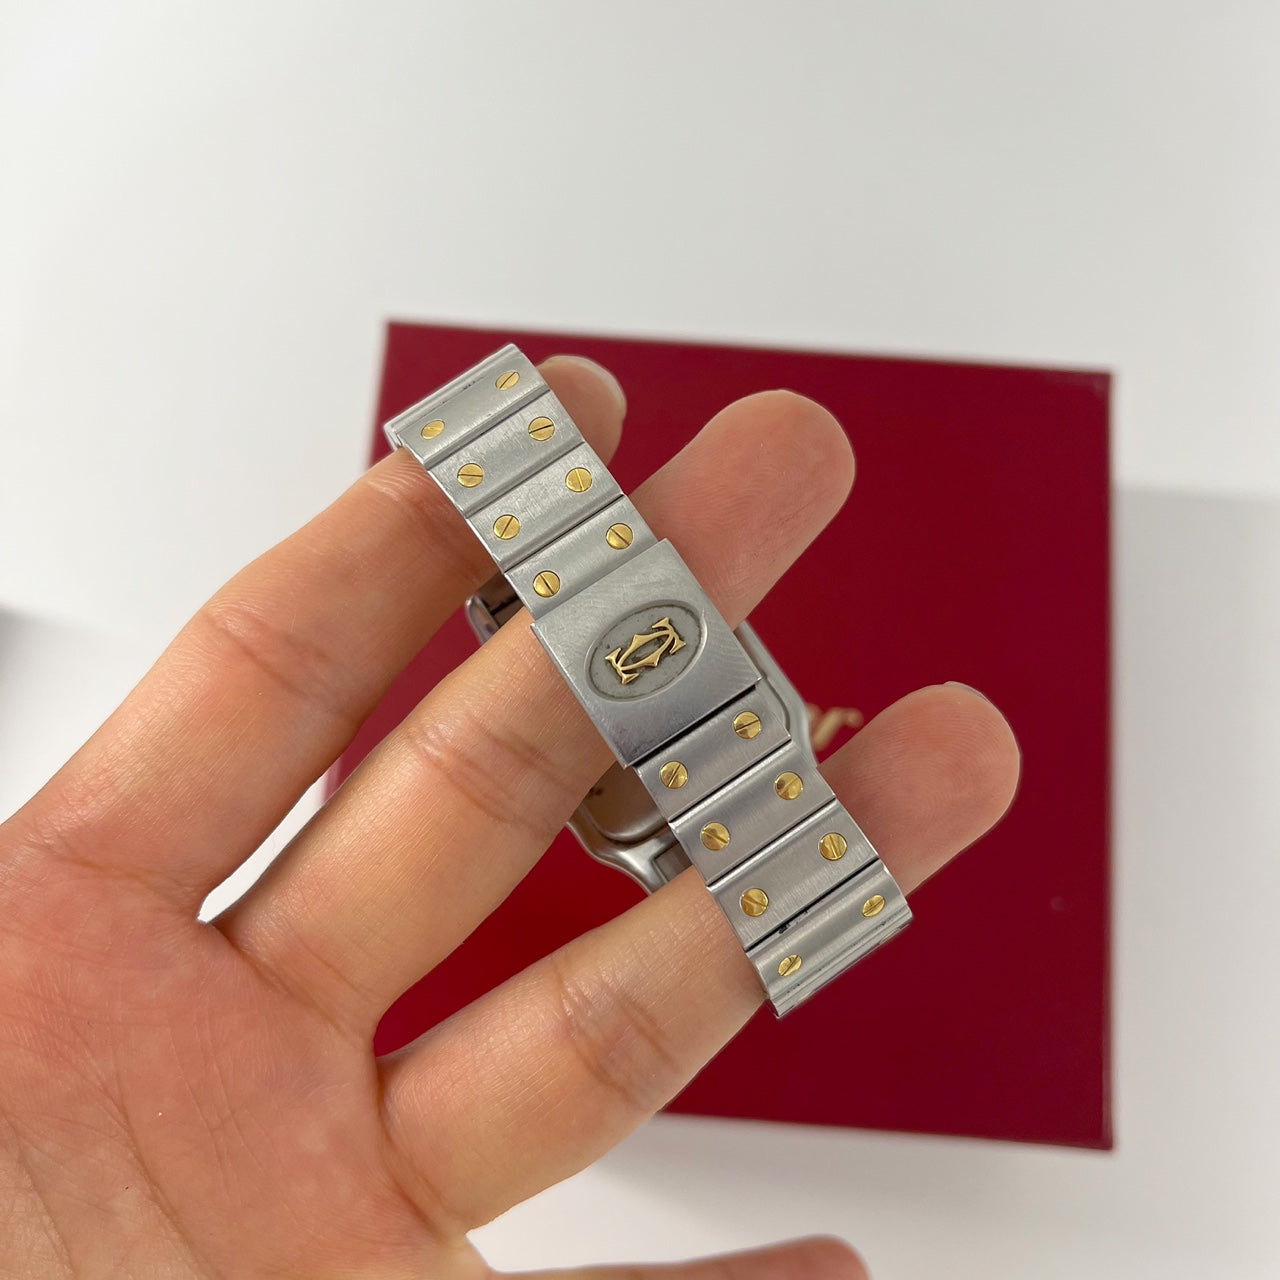 Guarantee Authentic Cartier Santos de Cartier Galbee REF#187901 18K Yellow Gold/Steel 24mm Quartz Watch